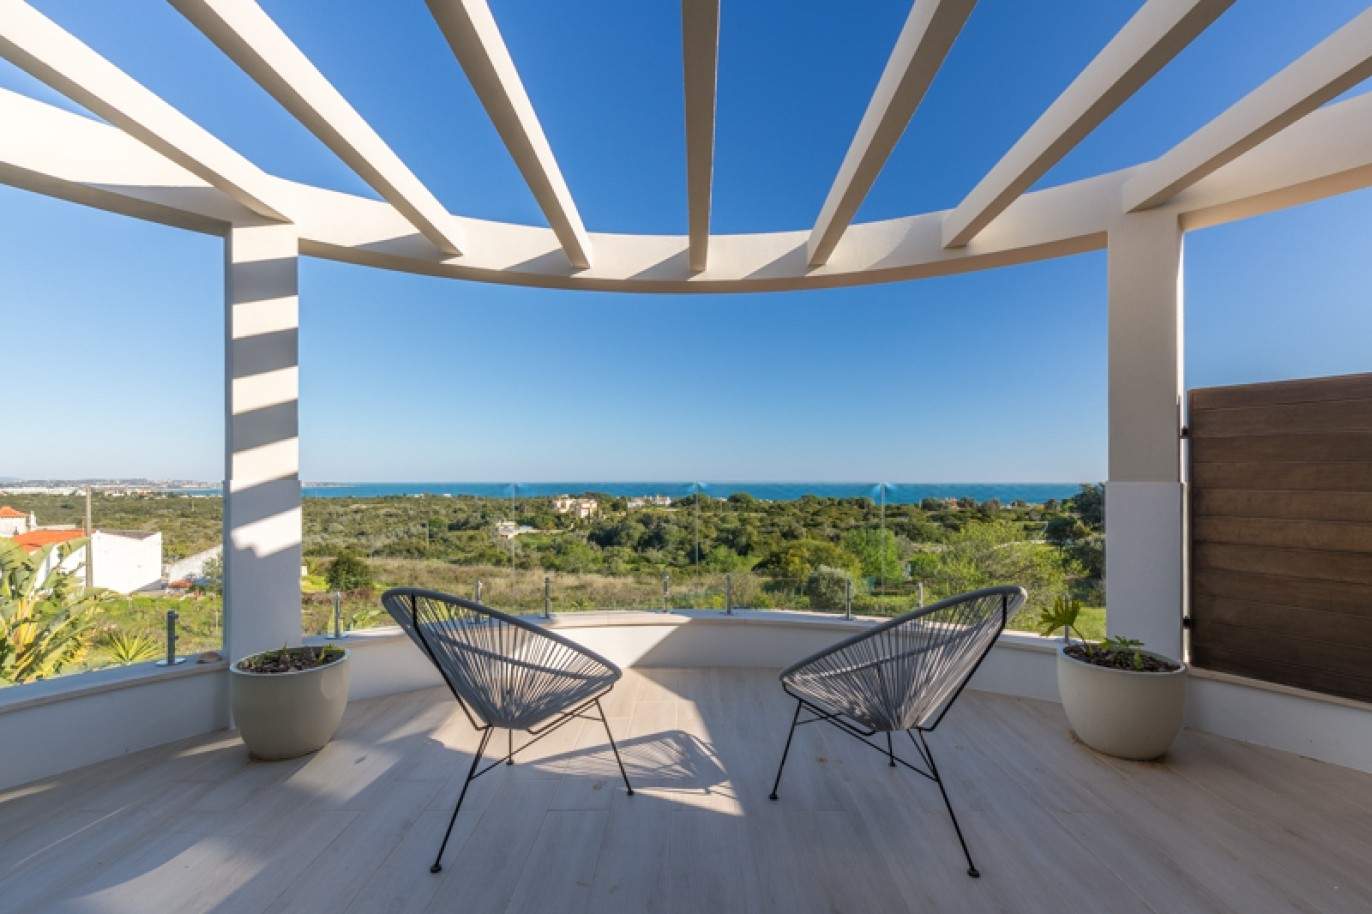 Moradia à venda, com vista mar, perto praia e golfe, Algarve, Portugal_76422